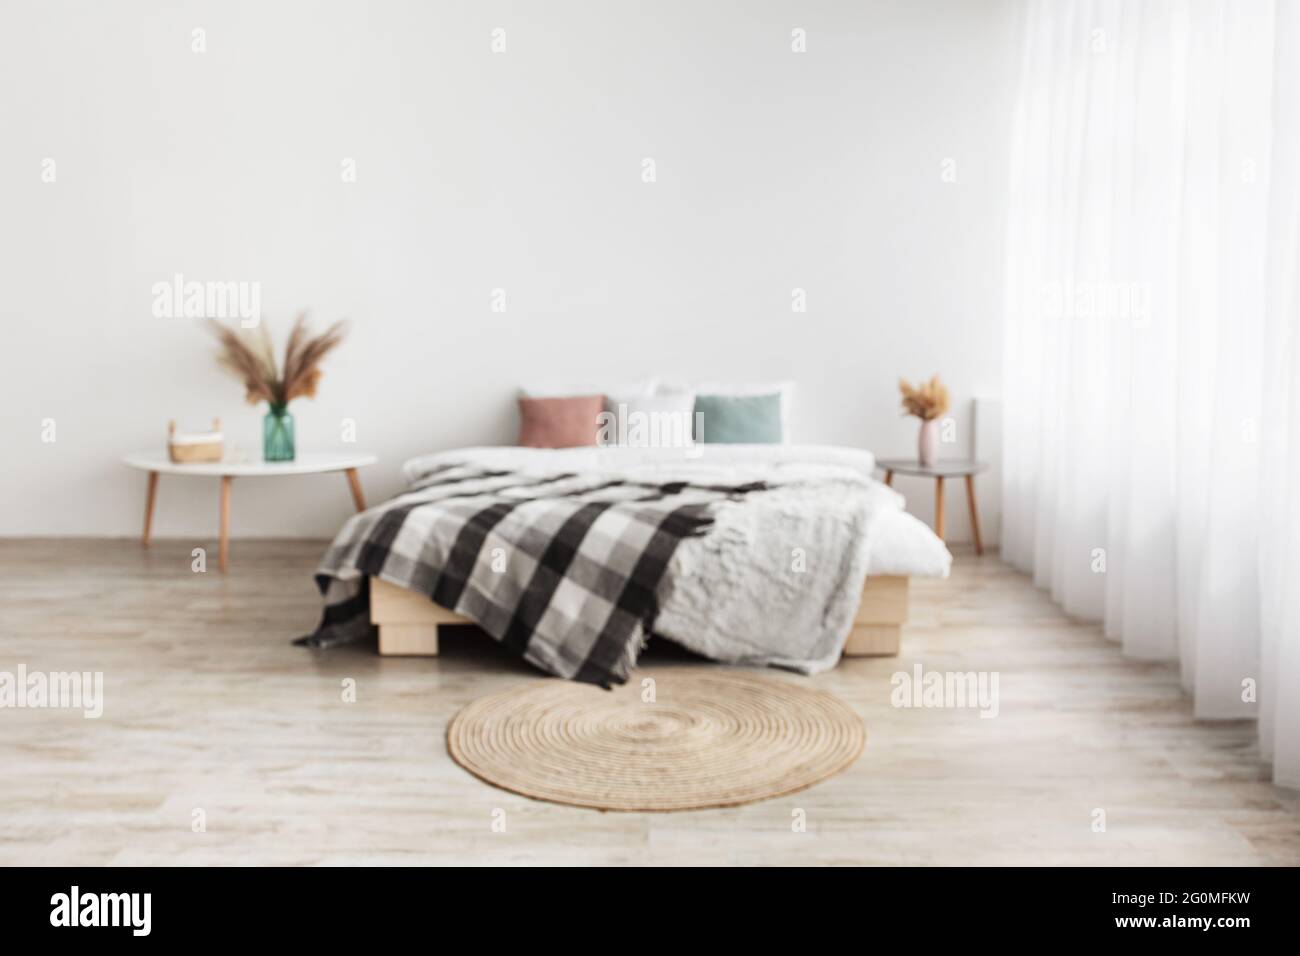 Blog über Wohnräume und gemütliches Design. Doppelbett mit Kissen und Decke, Tische mit Trockenpflanzen in Vasen Stockfoto